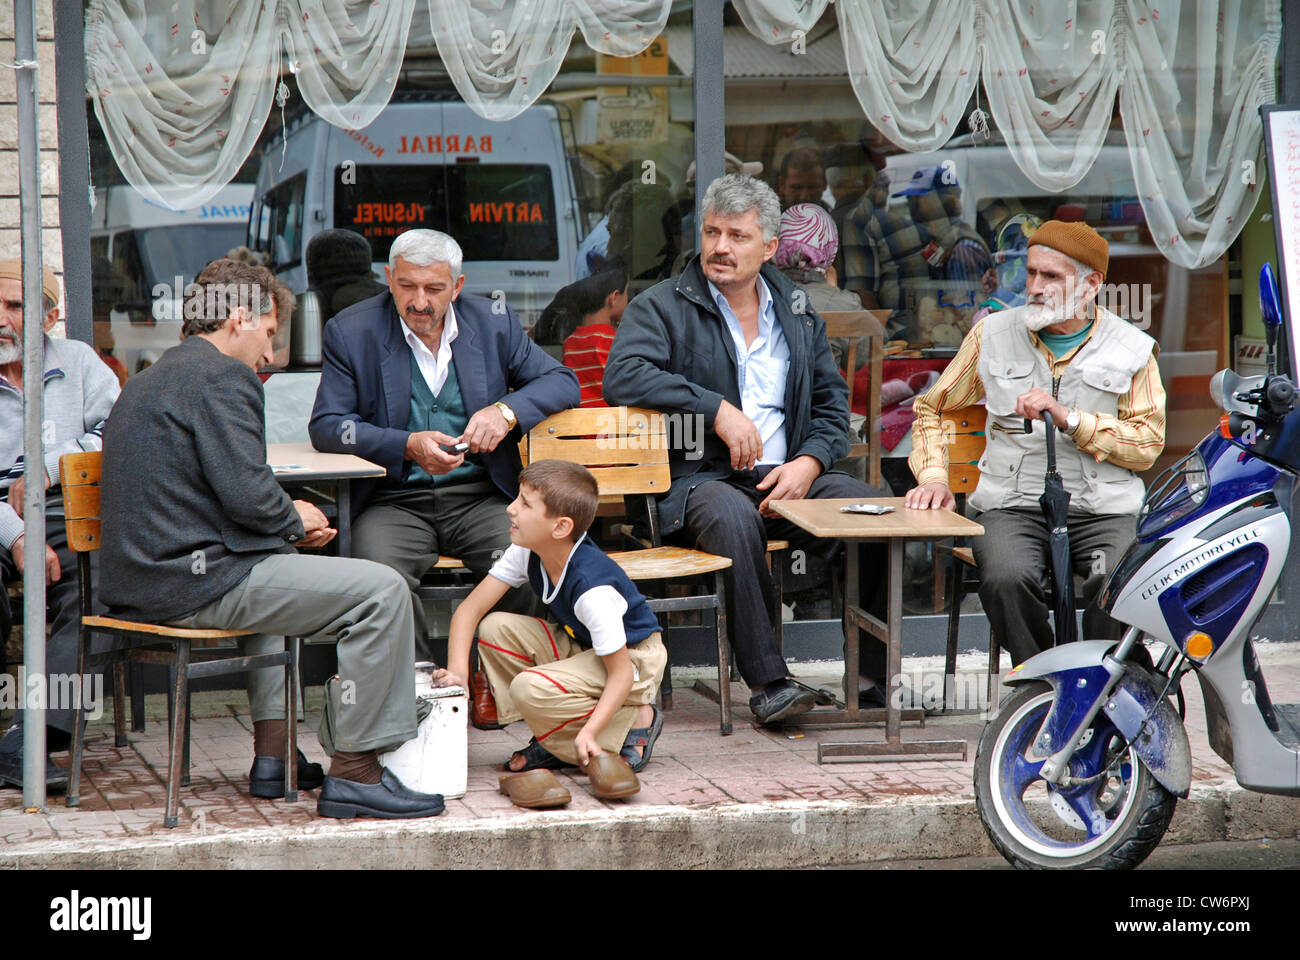 Joven lustrabotas limpieza de zapatos de hombres sentados delante de un café, Turquía, Anatolia oriental, Yusufeli Foto de stock